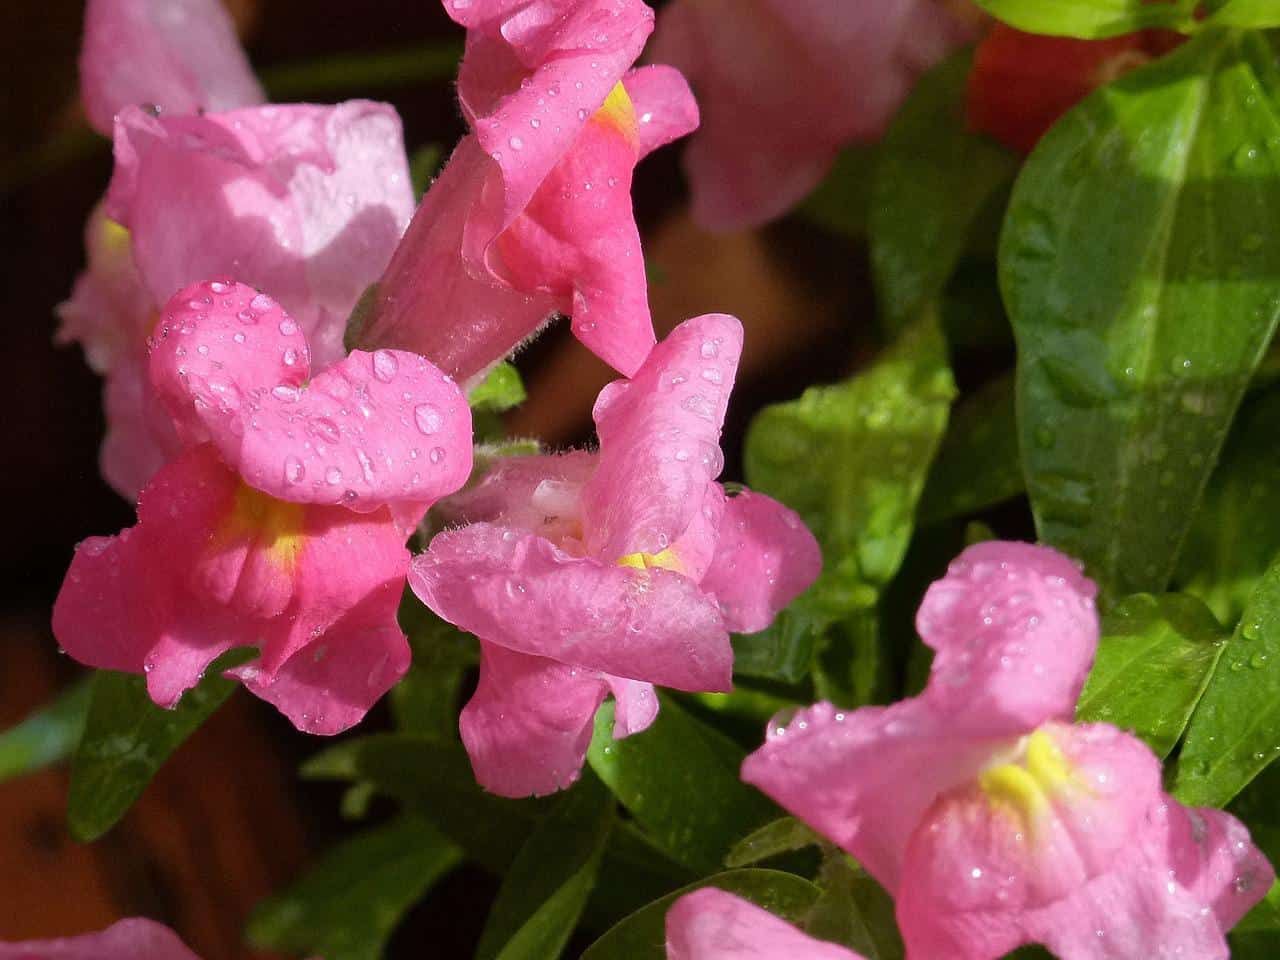 Freshly watered snapdragon flowers